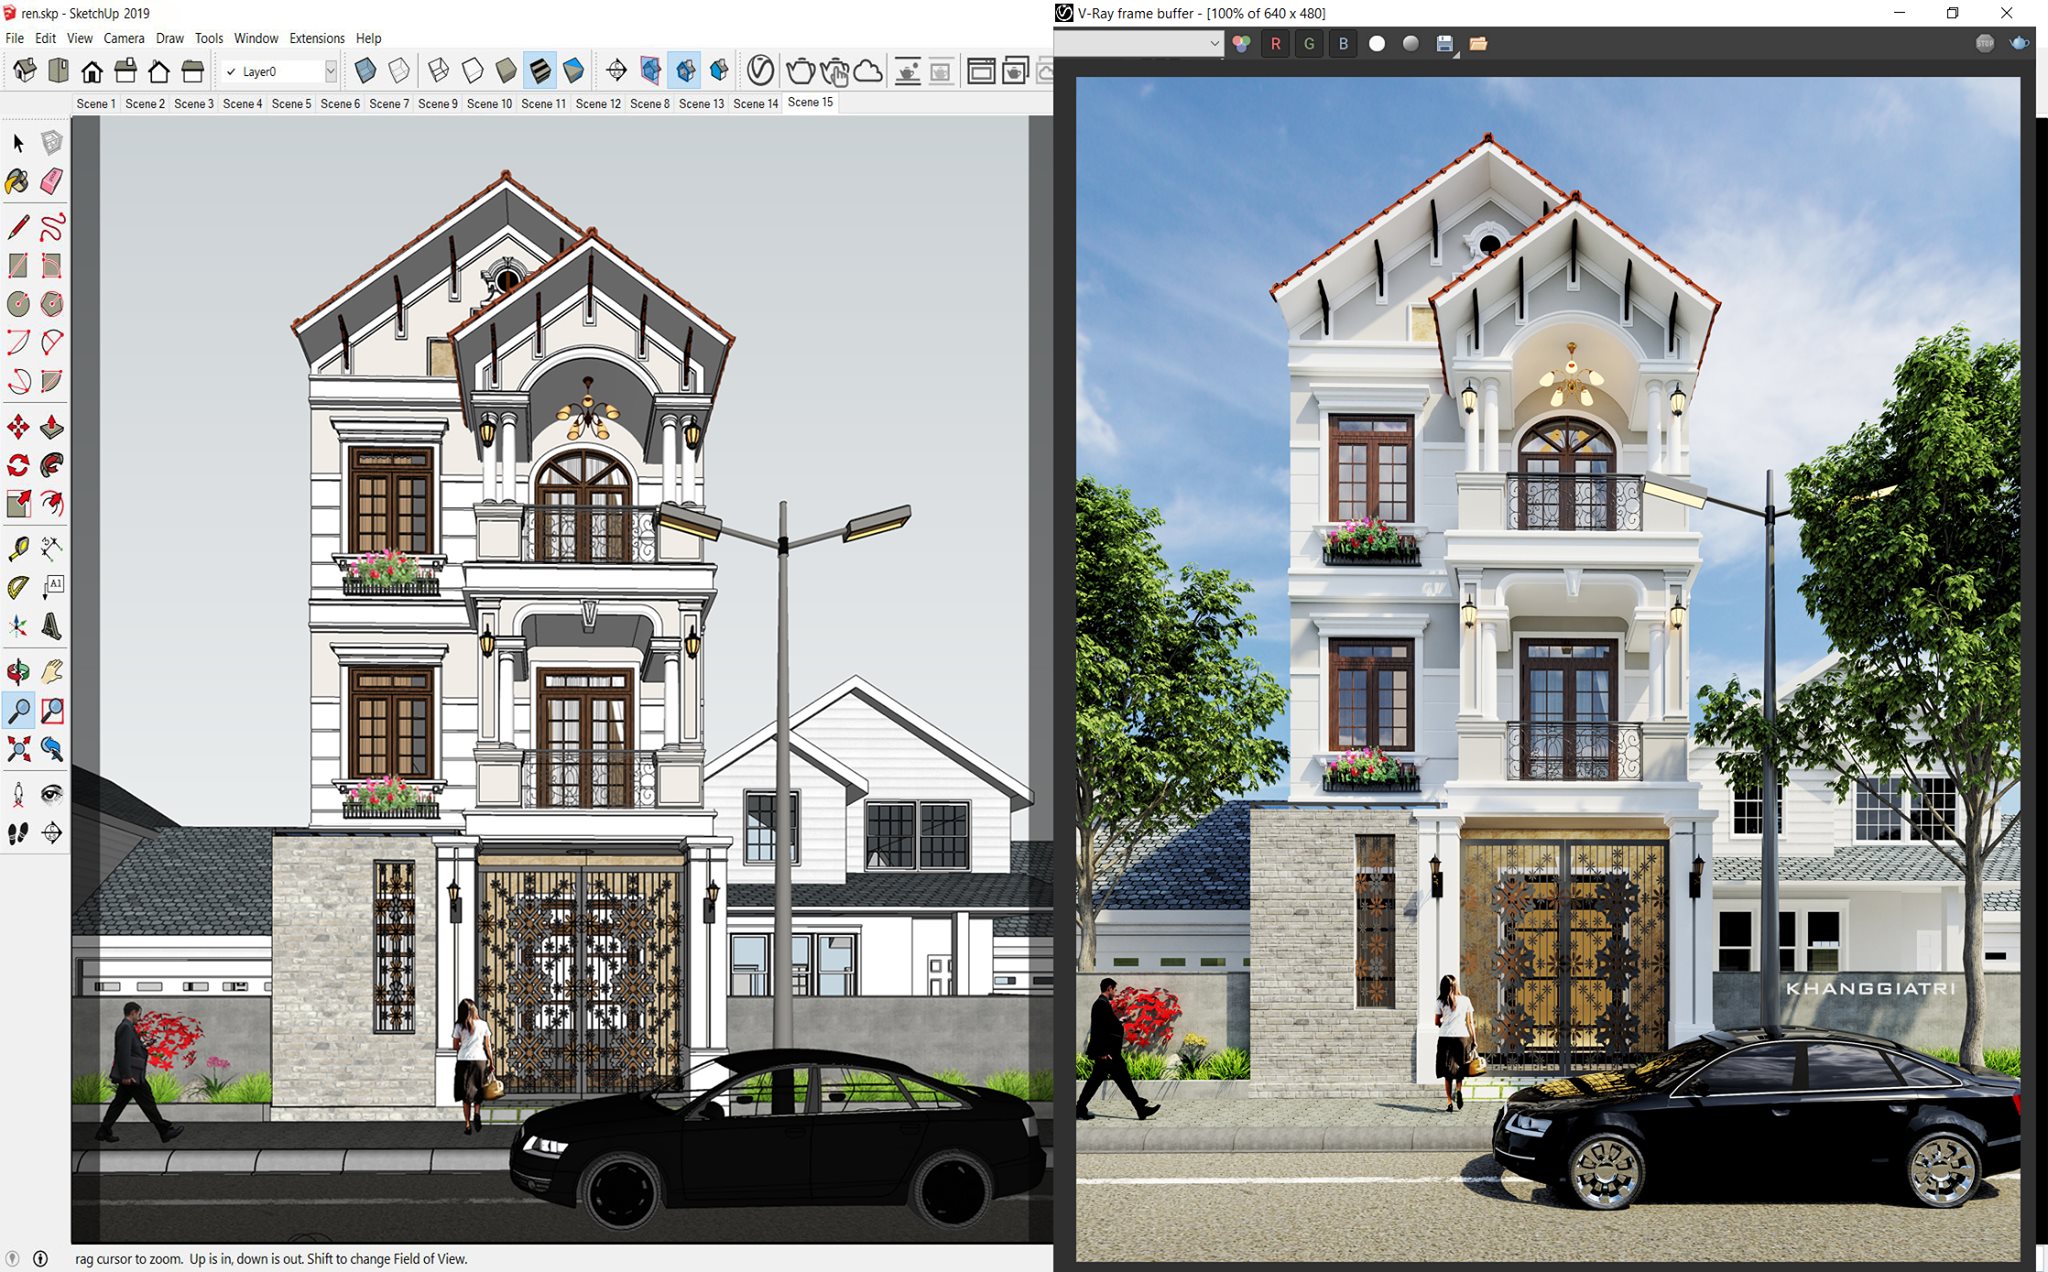 Thiết kế ngoại thất nhà phố với Sketchup sẽ giúp bạn tạo ra những kiệt tác độc đáo và đẳng cấp. Truy cập ngay hình ảnh để chiêm ngưỡng những công trình thiết kế ngoại thất đẹp nhất hôm nay!